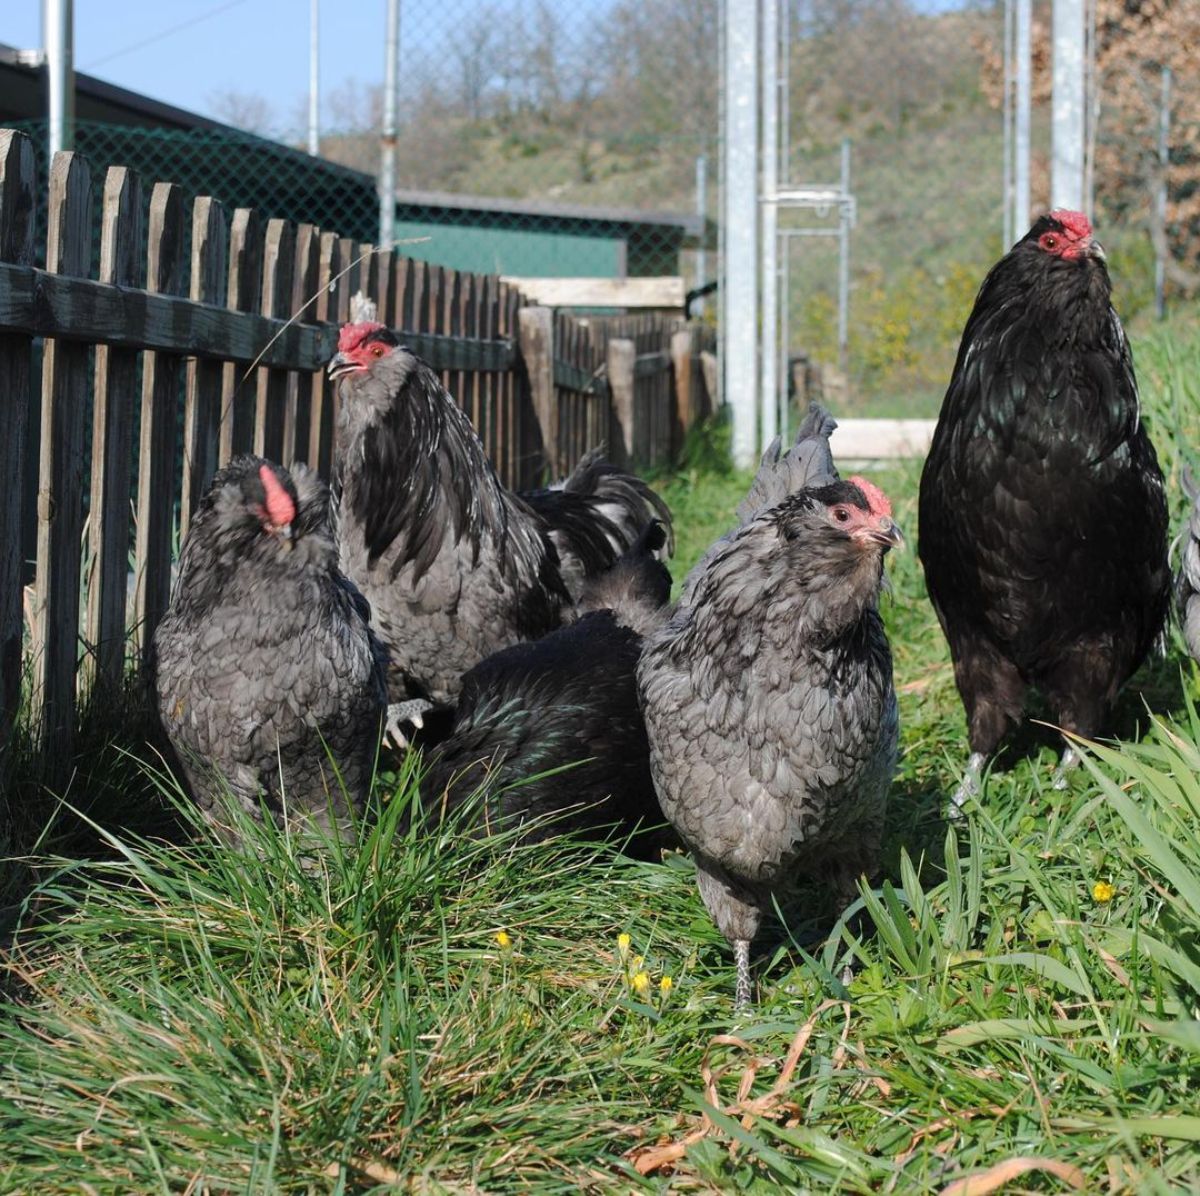 An Appenzeller Barthuhner chicken flock in a backyard near a wooden fence.